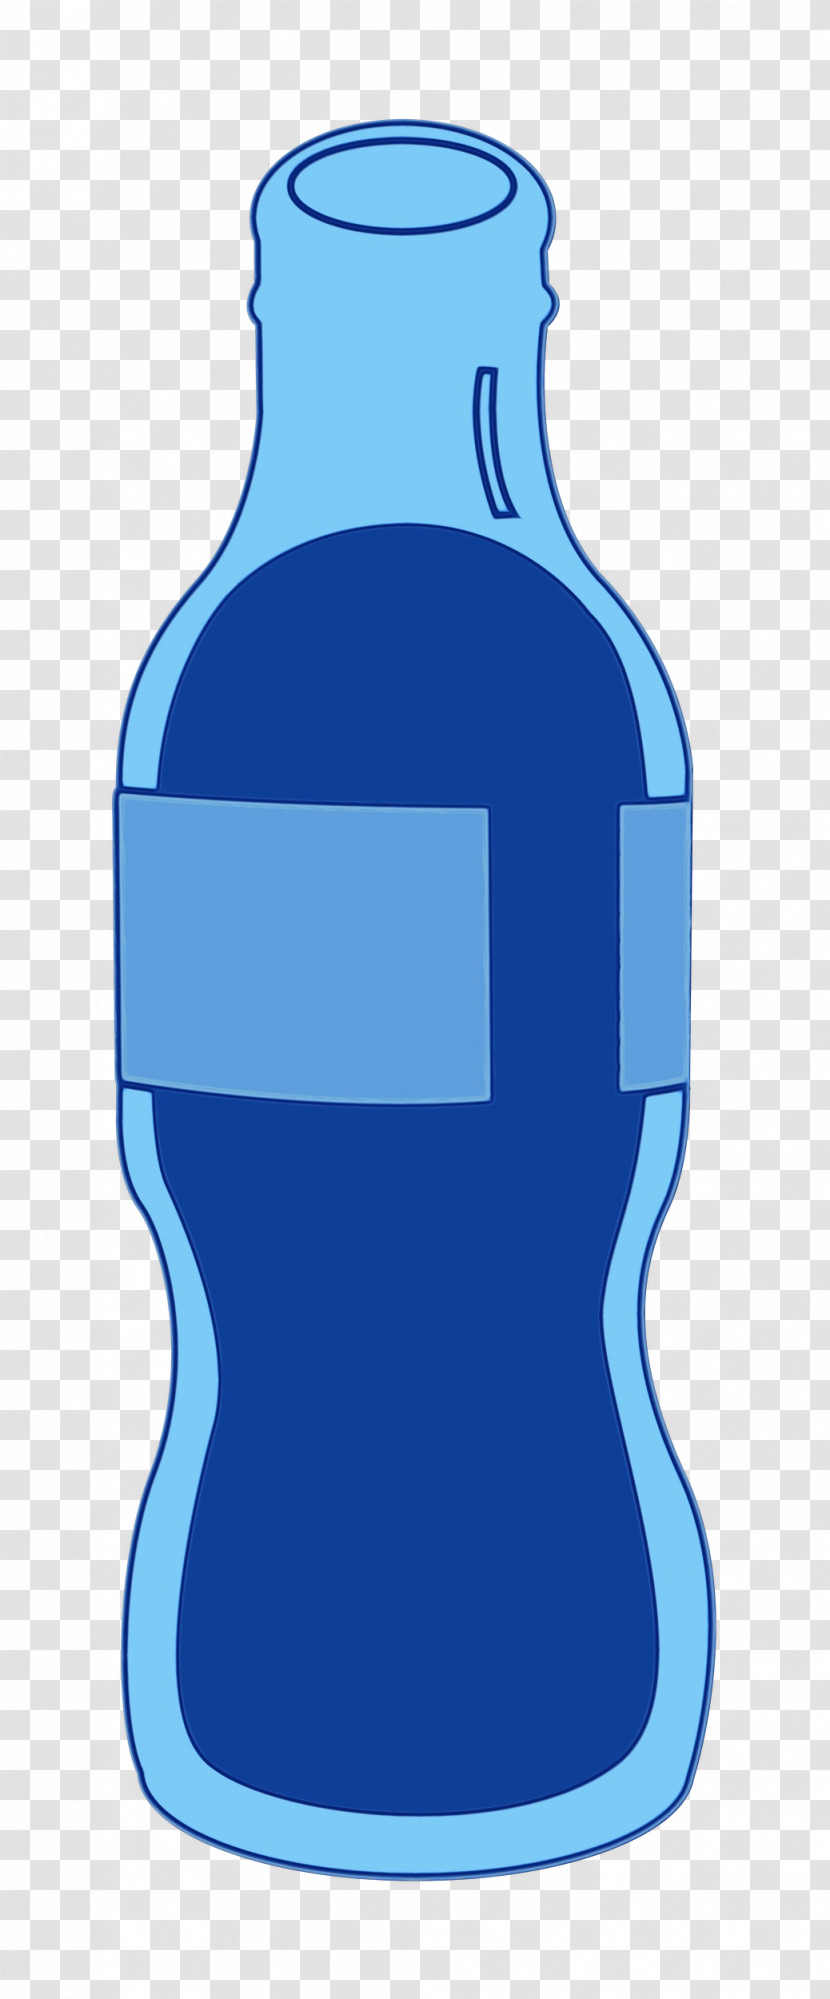 Glass Bottle Bottle Water Bottle Cobalt Blue Glass Transparent PNG